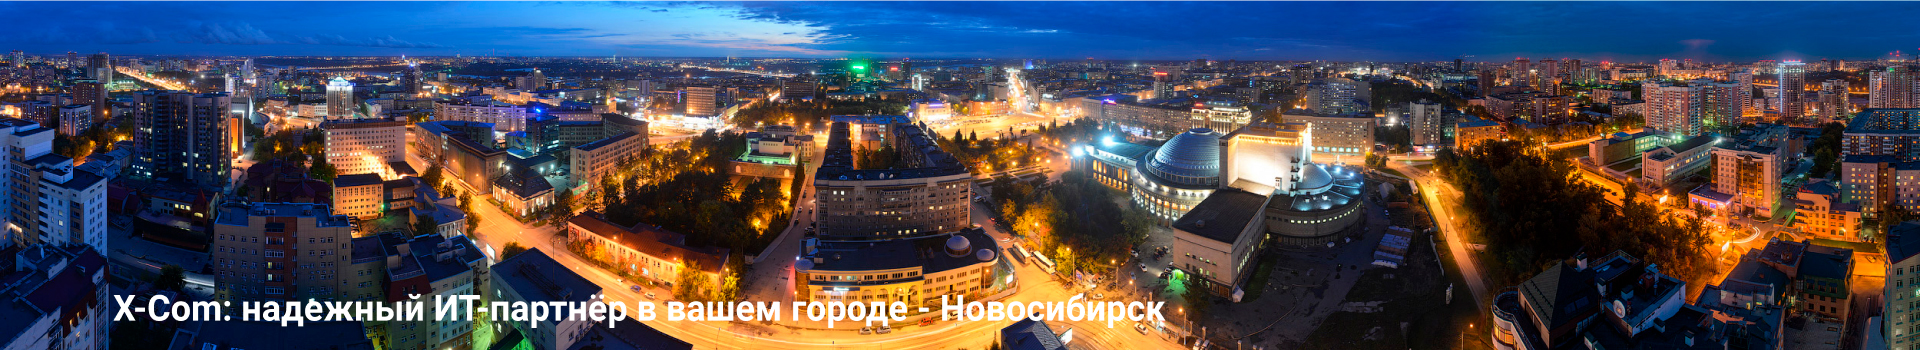 X-Com: надежный ИТ-партнёр в вашем городе - Новосибирск